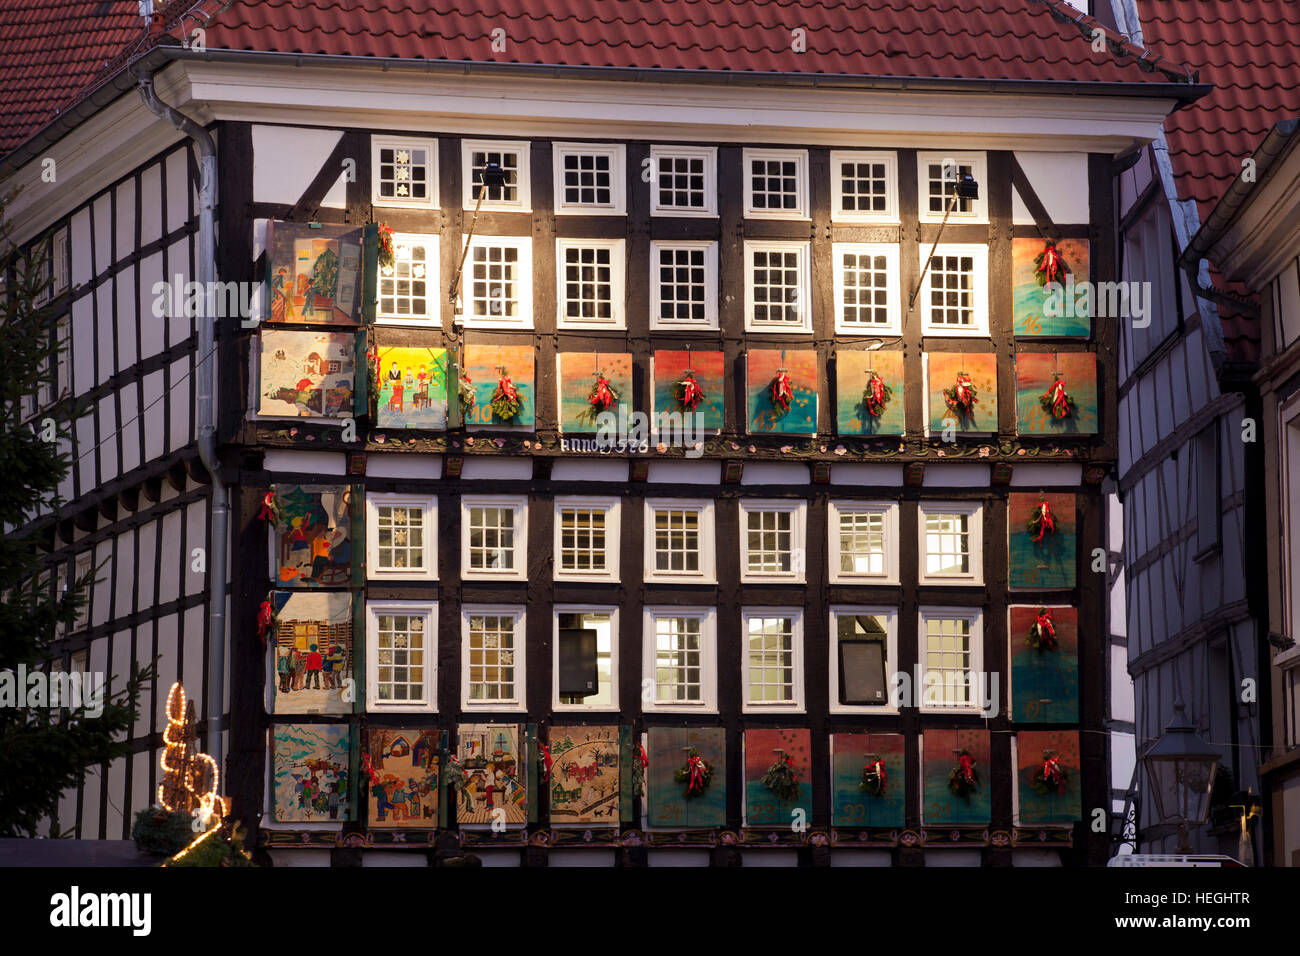 Deutschland, Hattingen, vom 1 Dezember 24 Fenster des alten Rathauses sind als einen riesigen Adventskalender dekoriert. Stockfoto